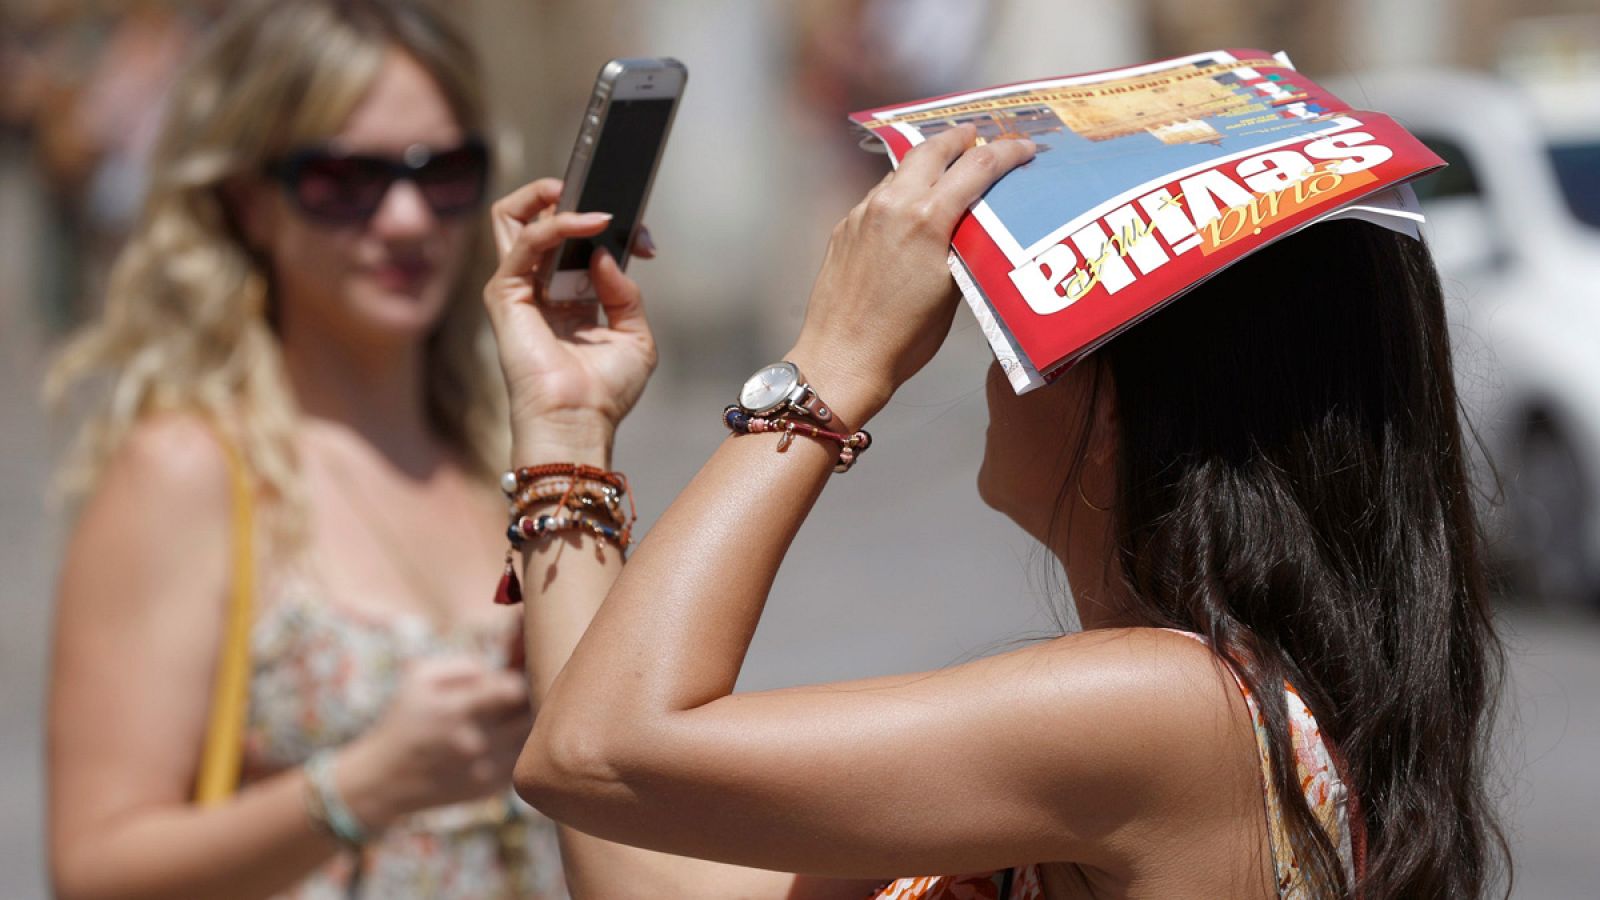 Una turista se fotografía con su teléfono móvil mientras se proteje del sol con una guía turística de Sevilla